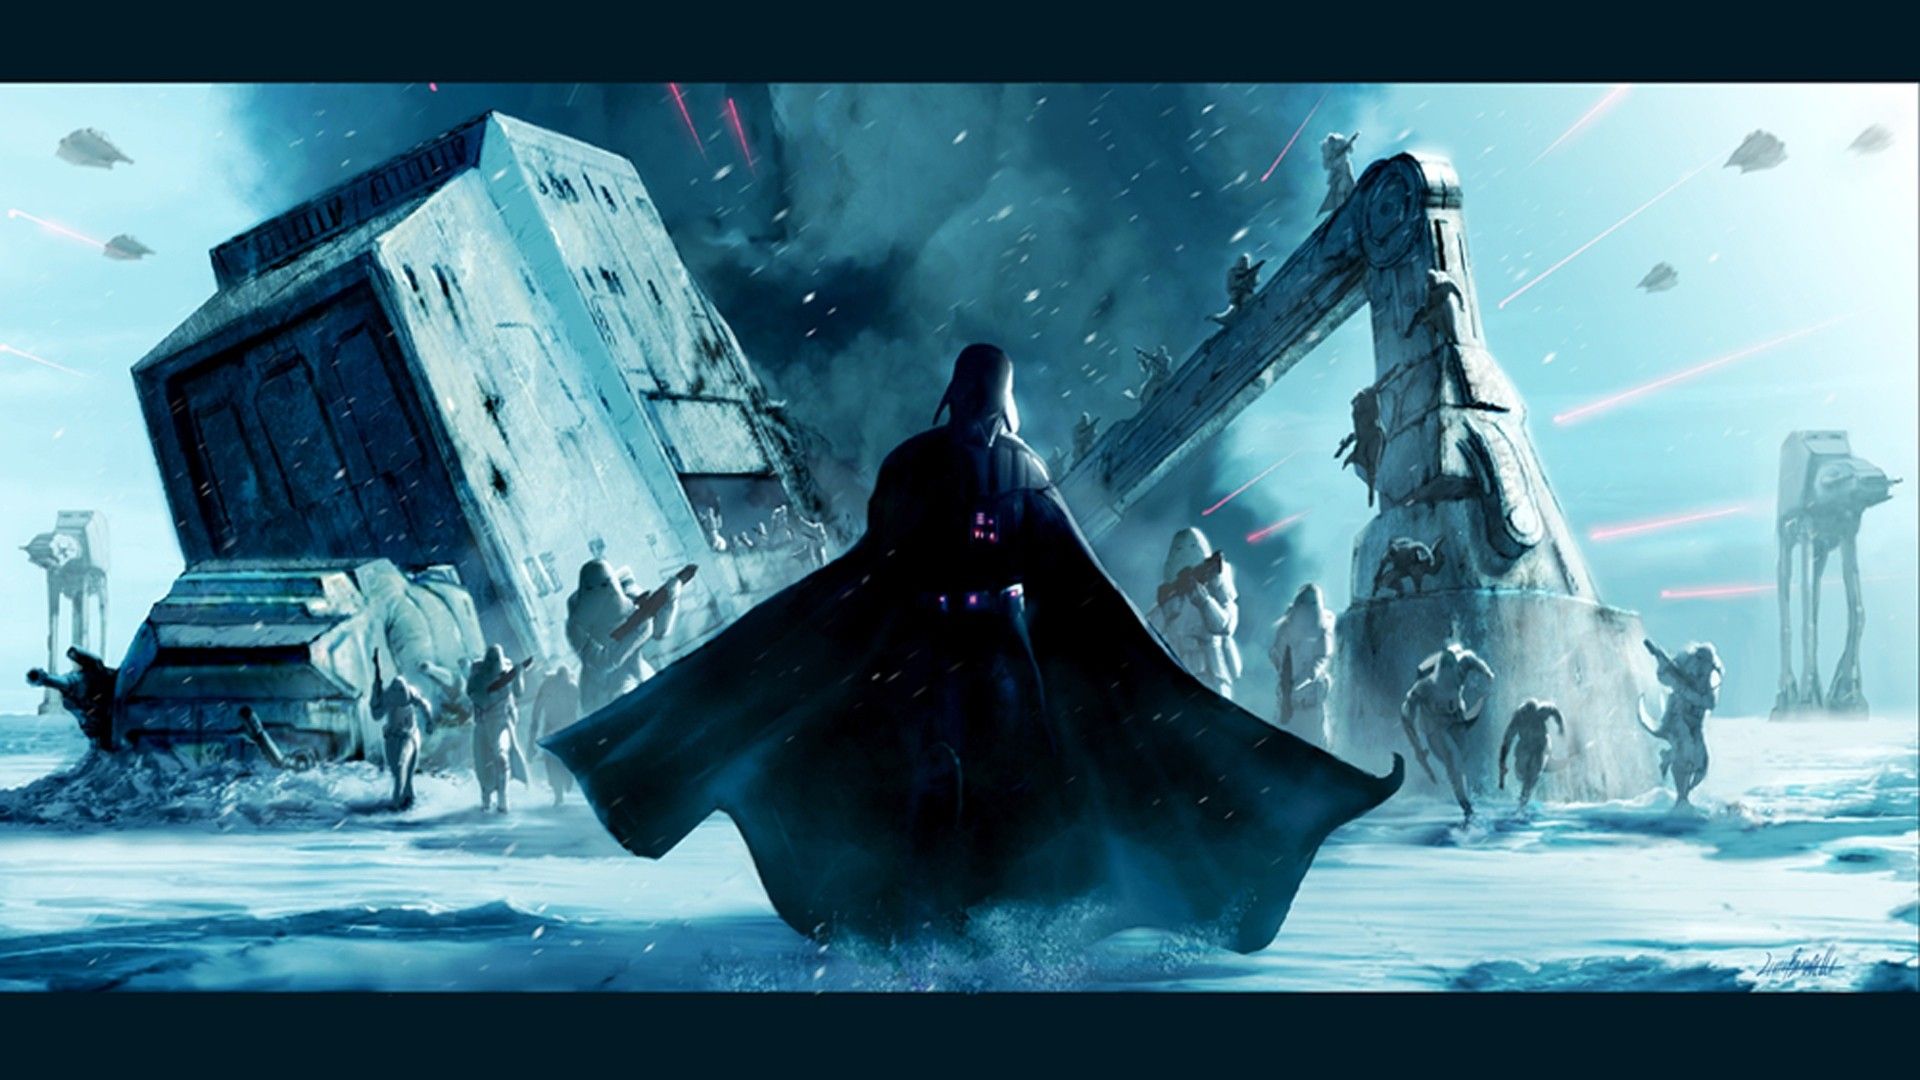 Star Wars Background Desktop Wallpapers, Backgrounds, Images